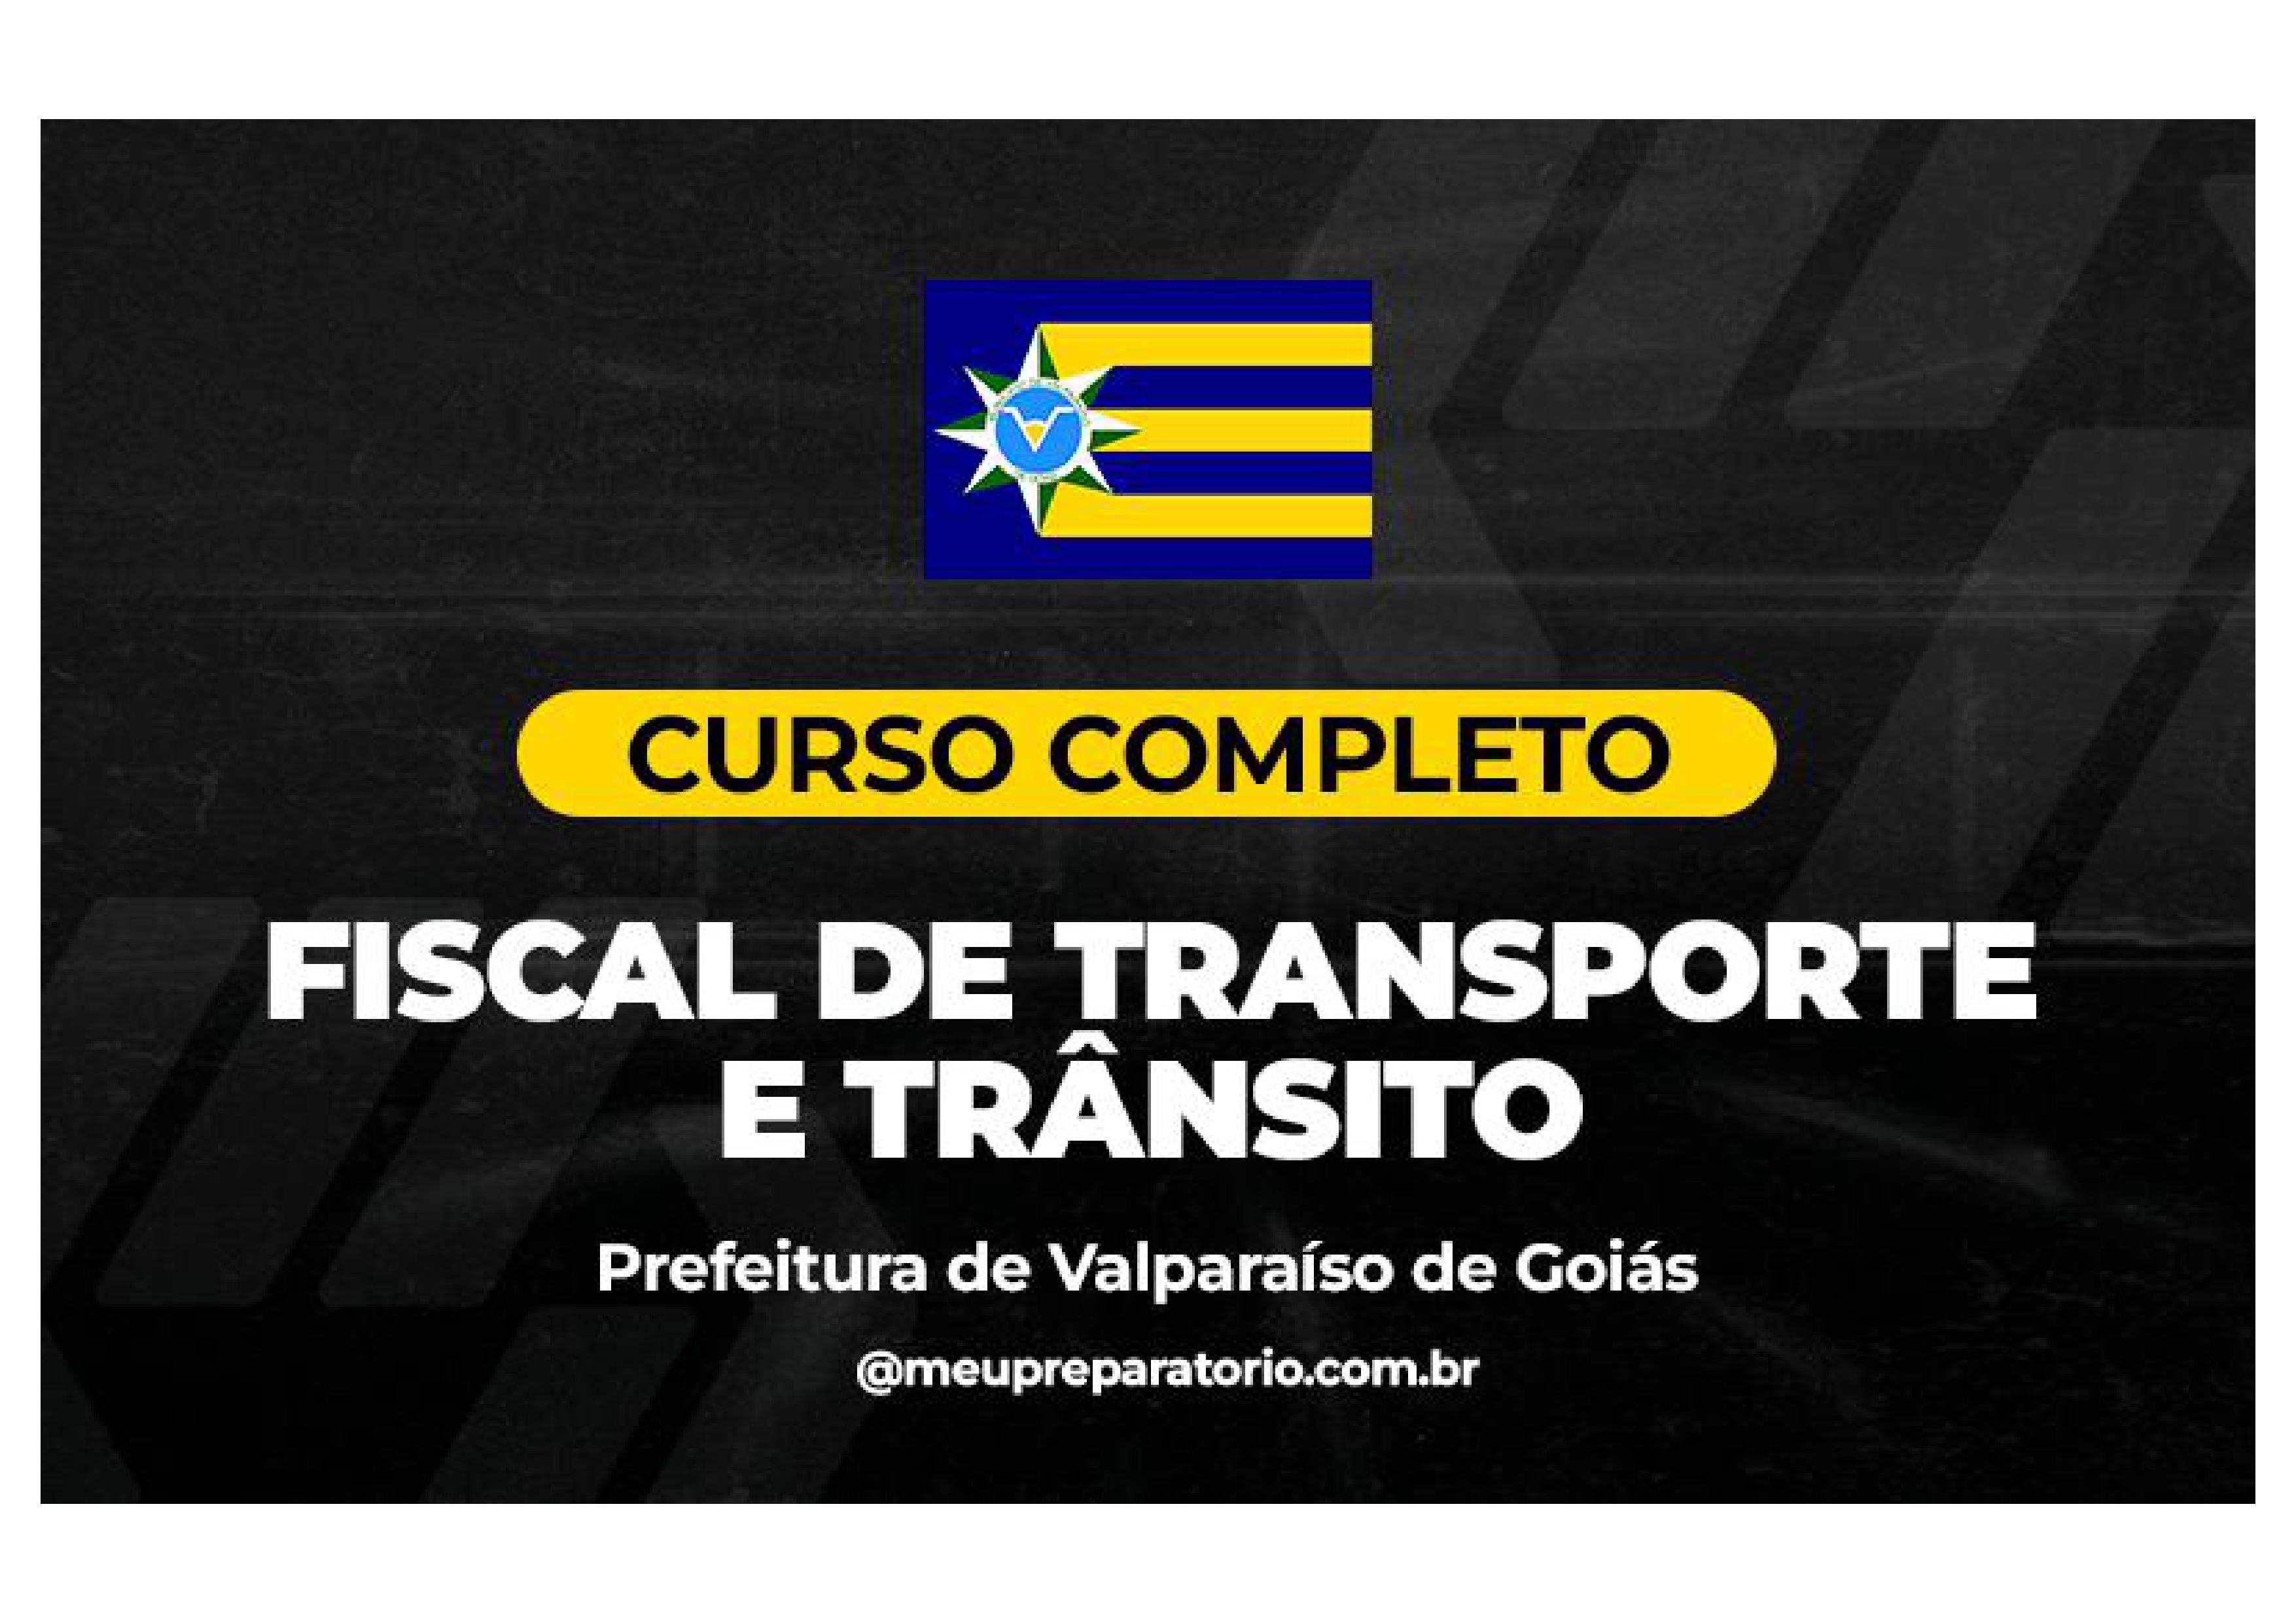 Fiscal de Transporte e Trânsito  - Valparaíso (GO)